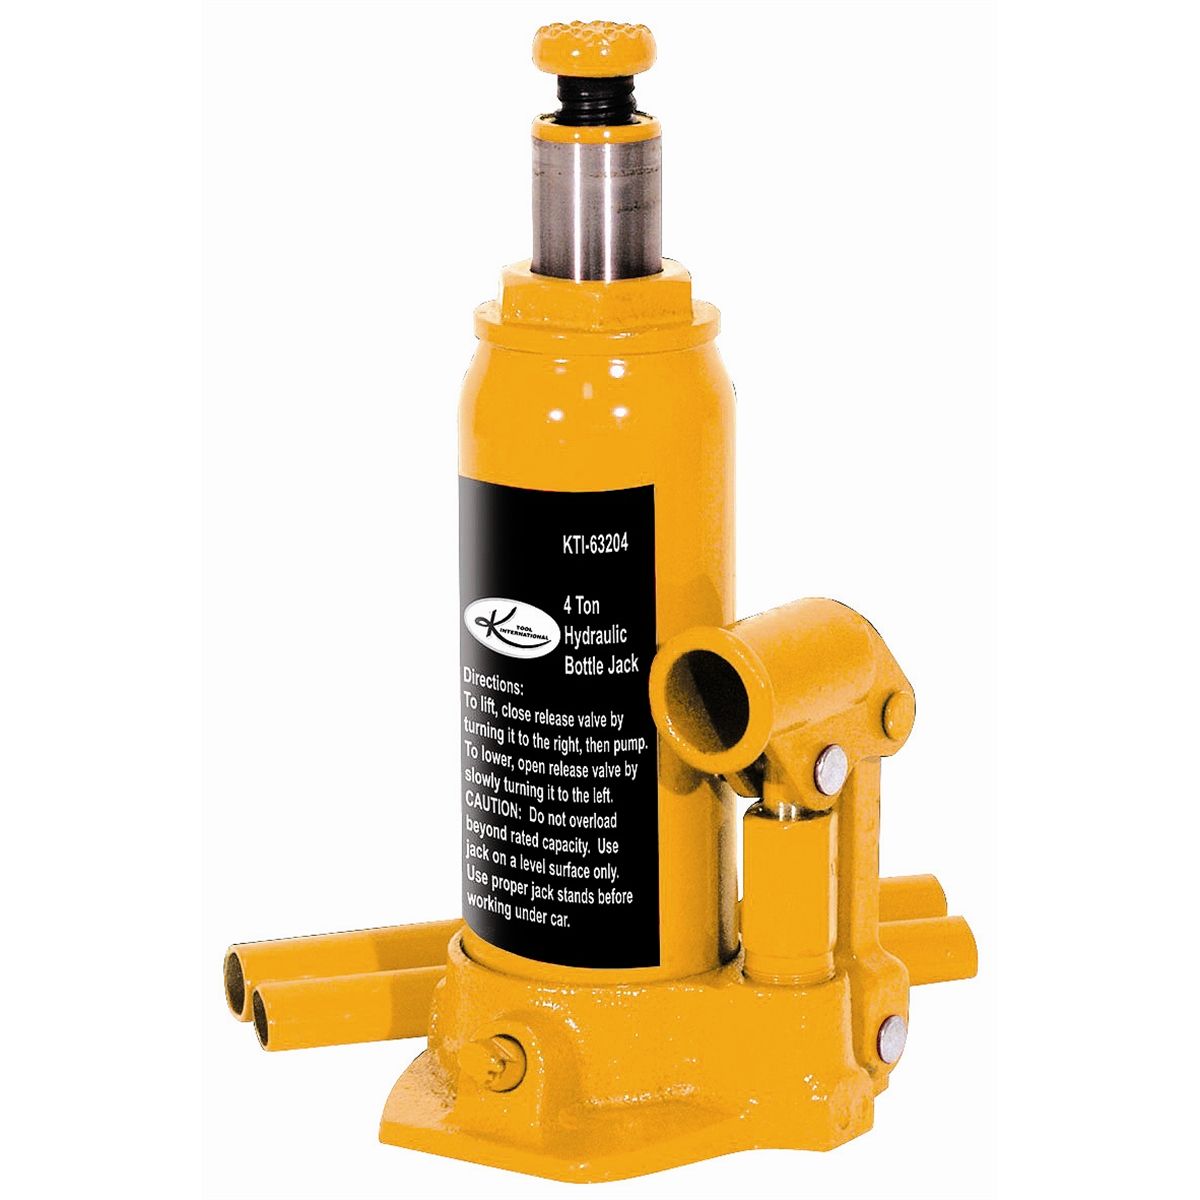 Hydraulic Bottle Jack - 4 Ton Capacity